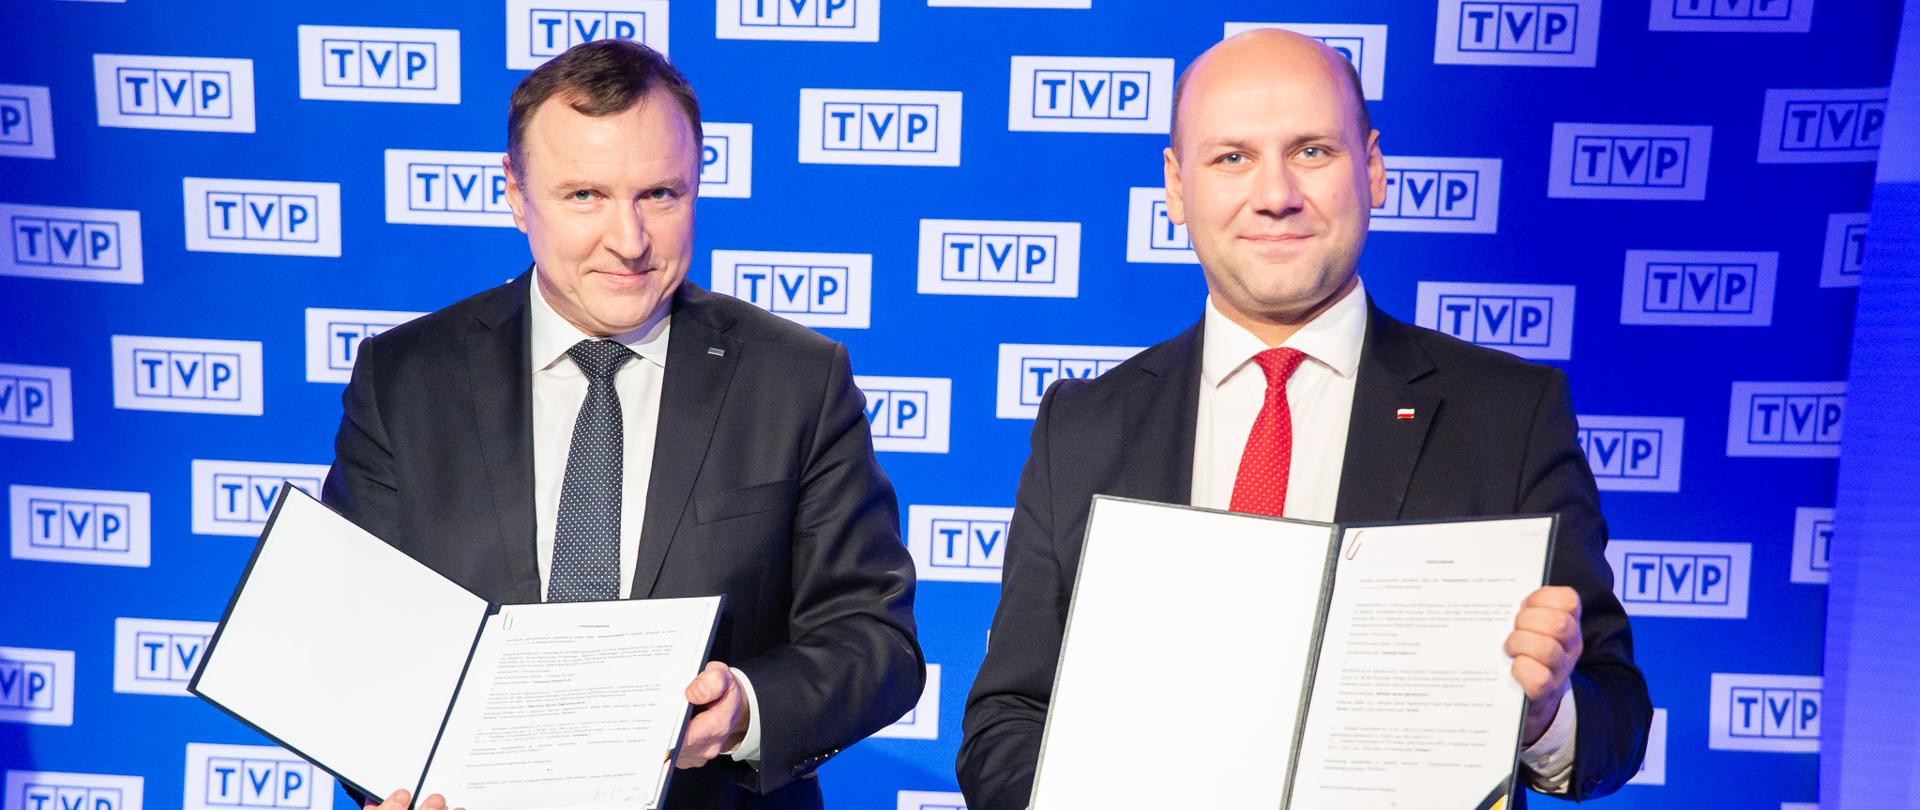 Podpisanie porozumienia pomiędzy MSZ a Telewizją Polską w sprawie TVP Wilno